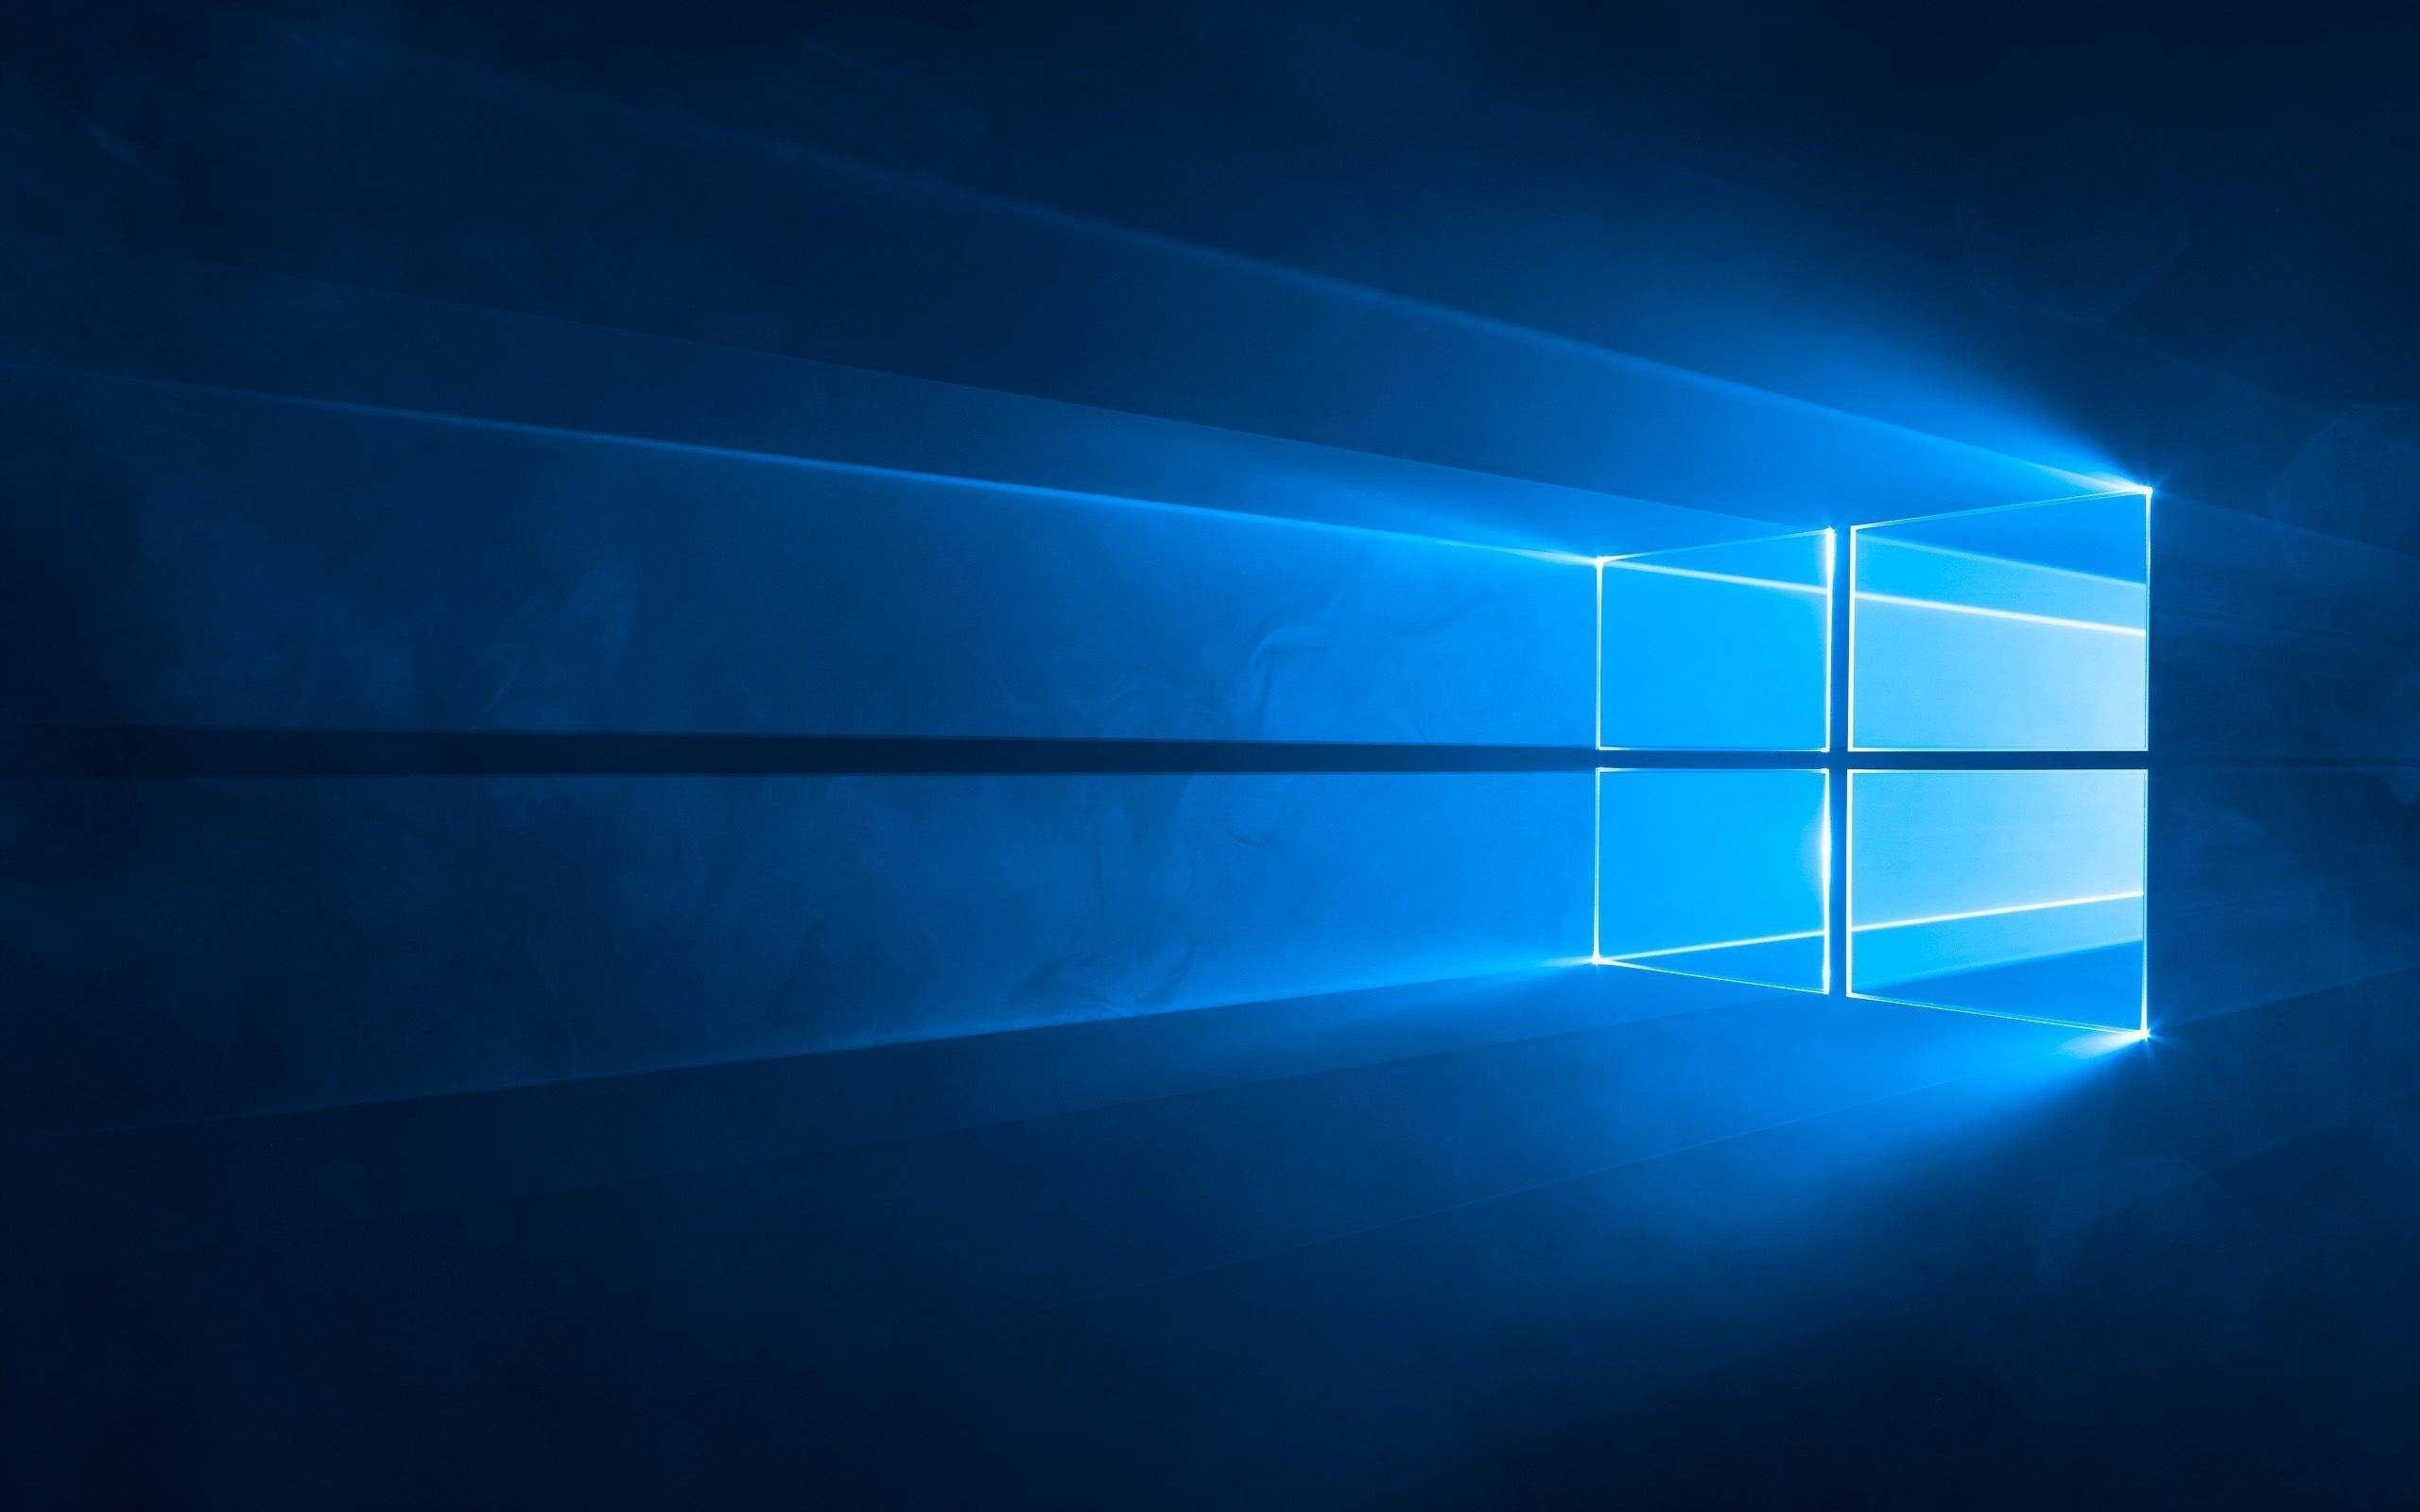  Die Besten Hintergrundbild 2560x1600. Windows 10: Standard Wallpaper Für Den Desktop (Hero Hintergrundbild)